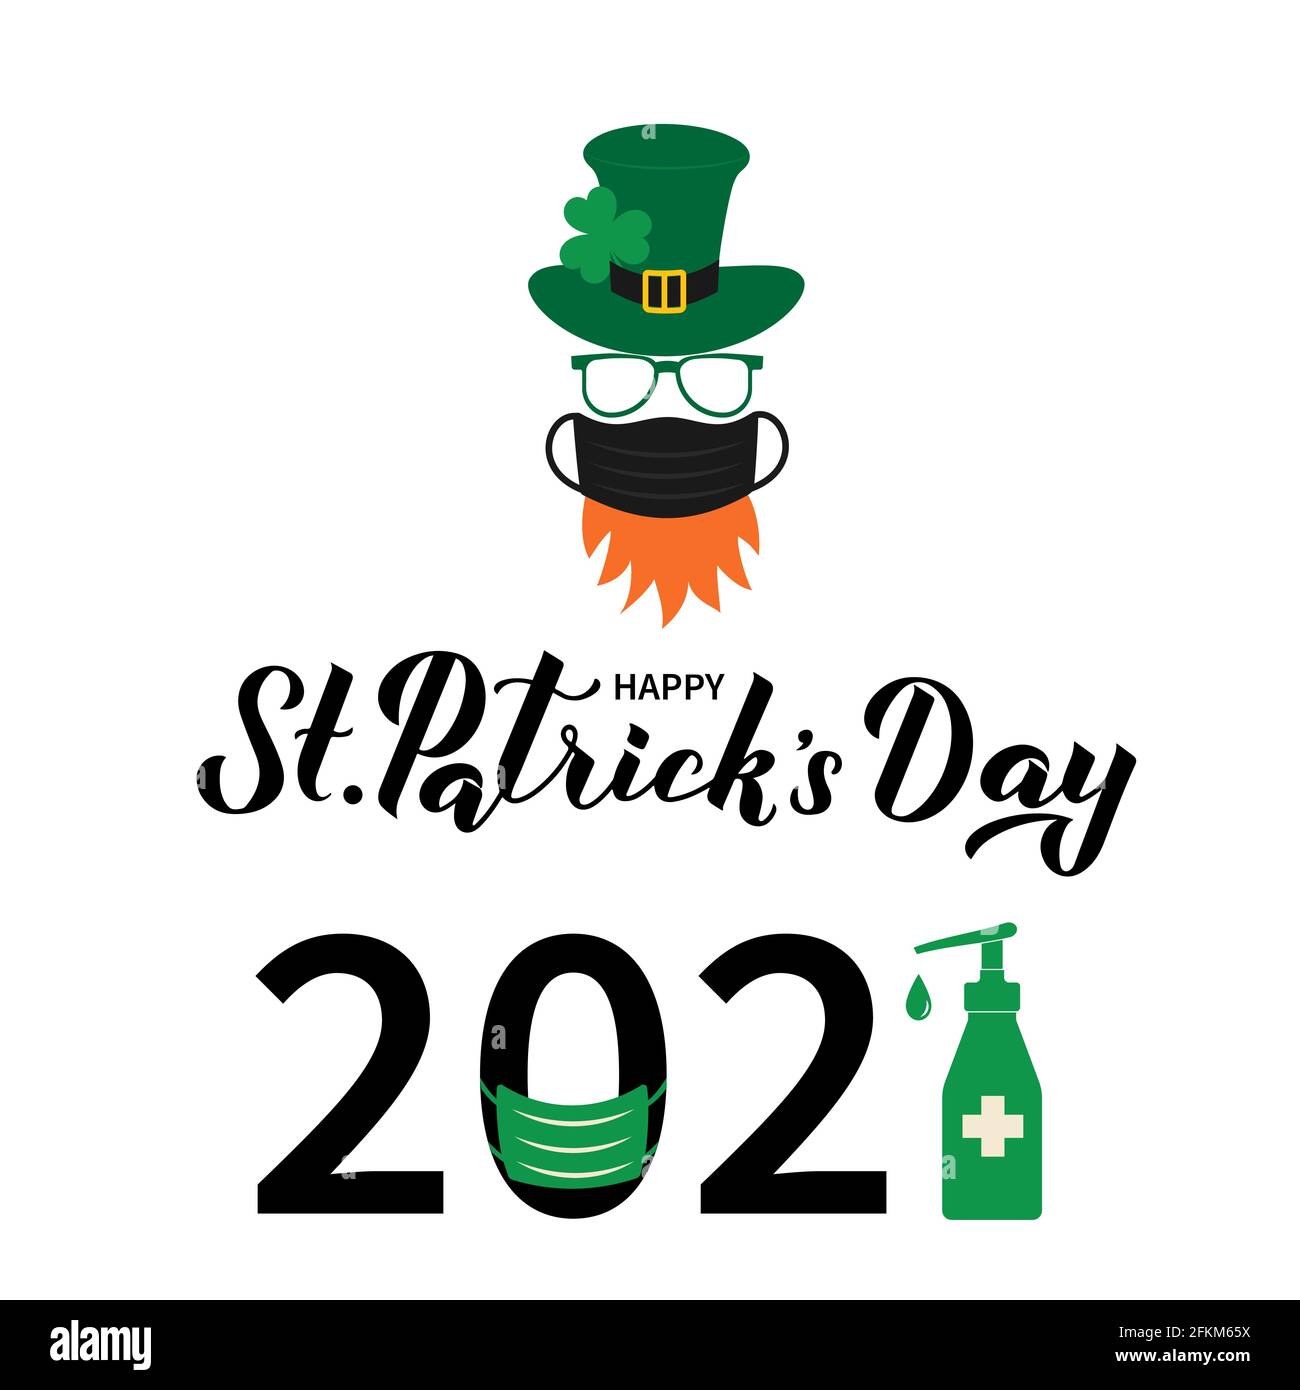 Happy St. Patrick s Day 2021 Schriftzug und Cartoon-Ikone von Kobold mit Gesichtsmaske grünen Hut Kleeblatt. Pandemie Covid Saint Patricks Day. Vektor-Tem Stock Vektor